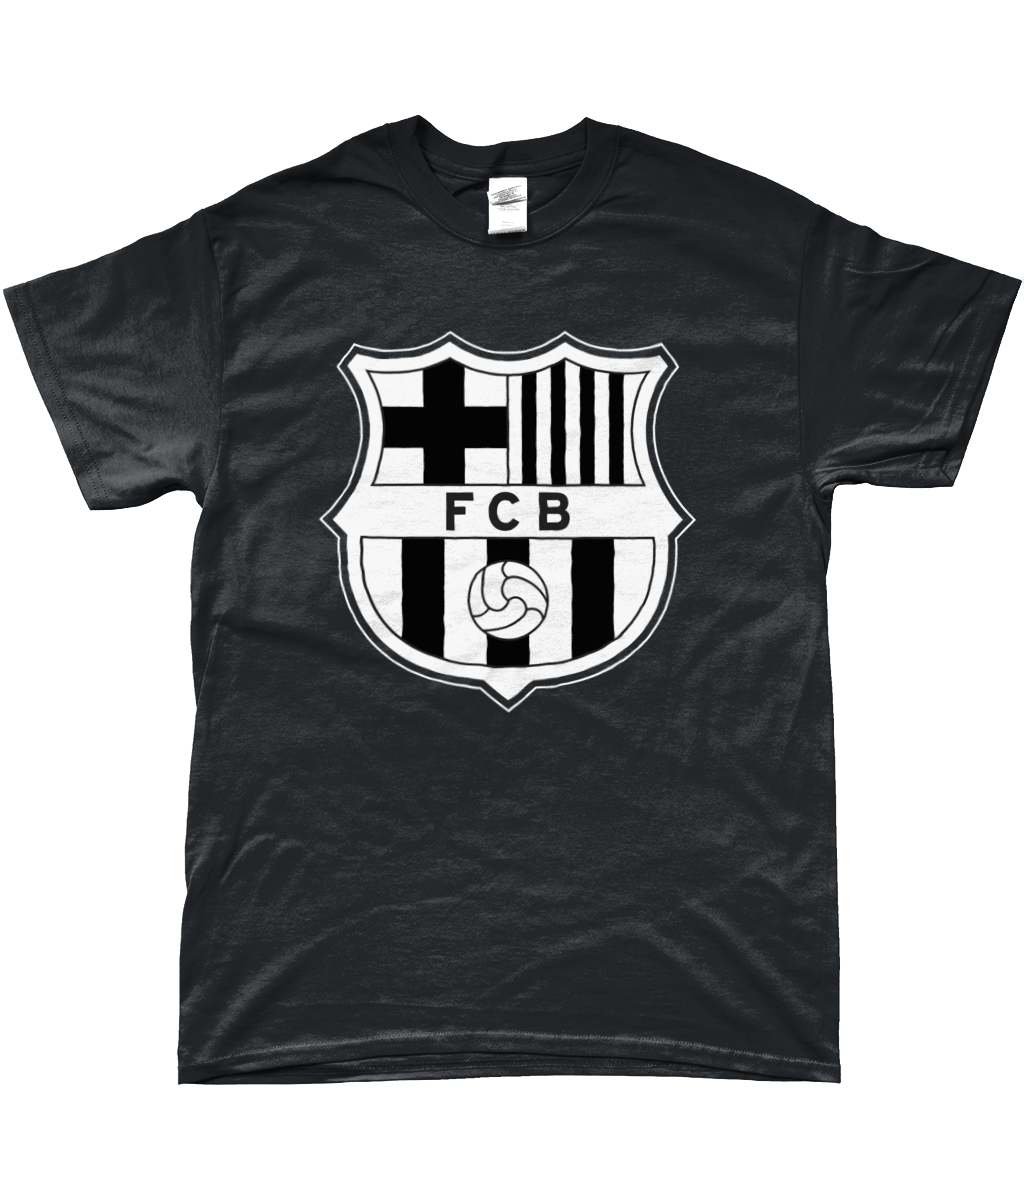 FC Barcelona - Logo T-shirt